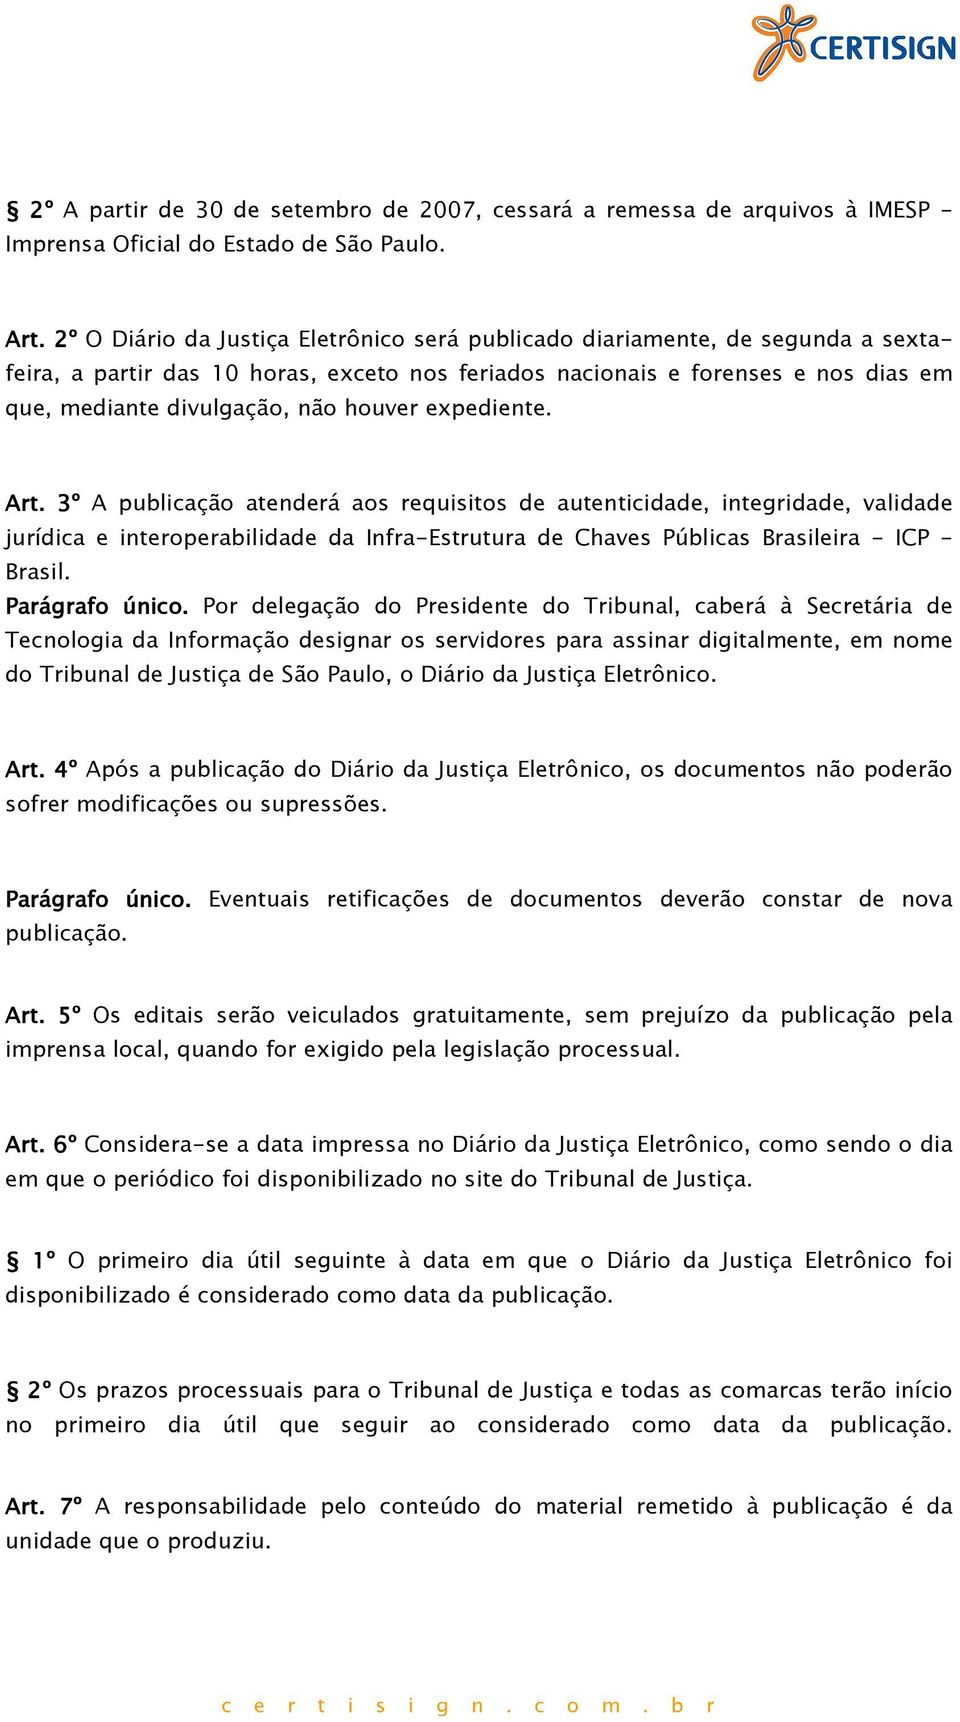 houver expediente. Art. 3º A publicação atenderá aos requisitos de autenticidade, integridade, validade jurídica e interoperabilidade da Infra-Estrutura de Chaves Públicas Brasileira - ICP - Brasil.